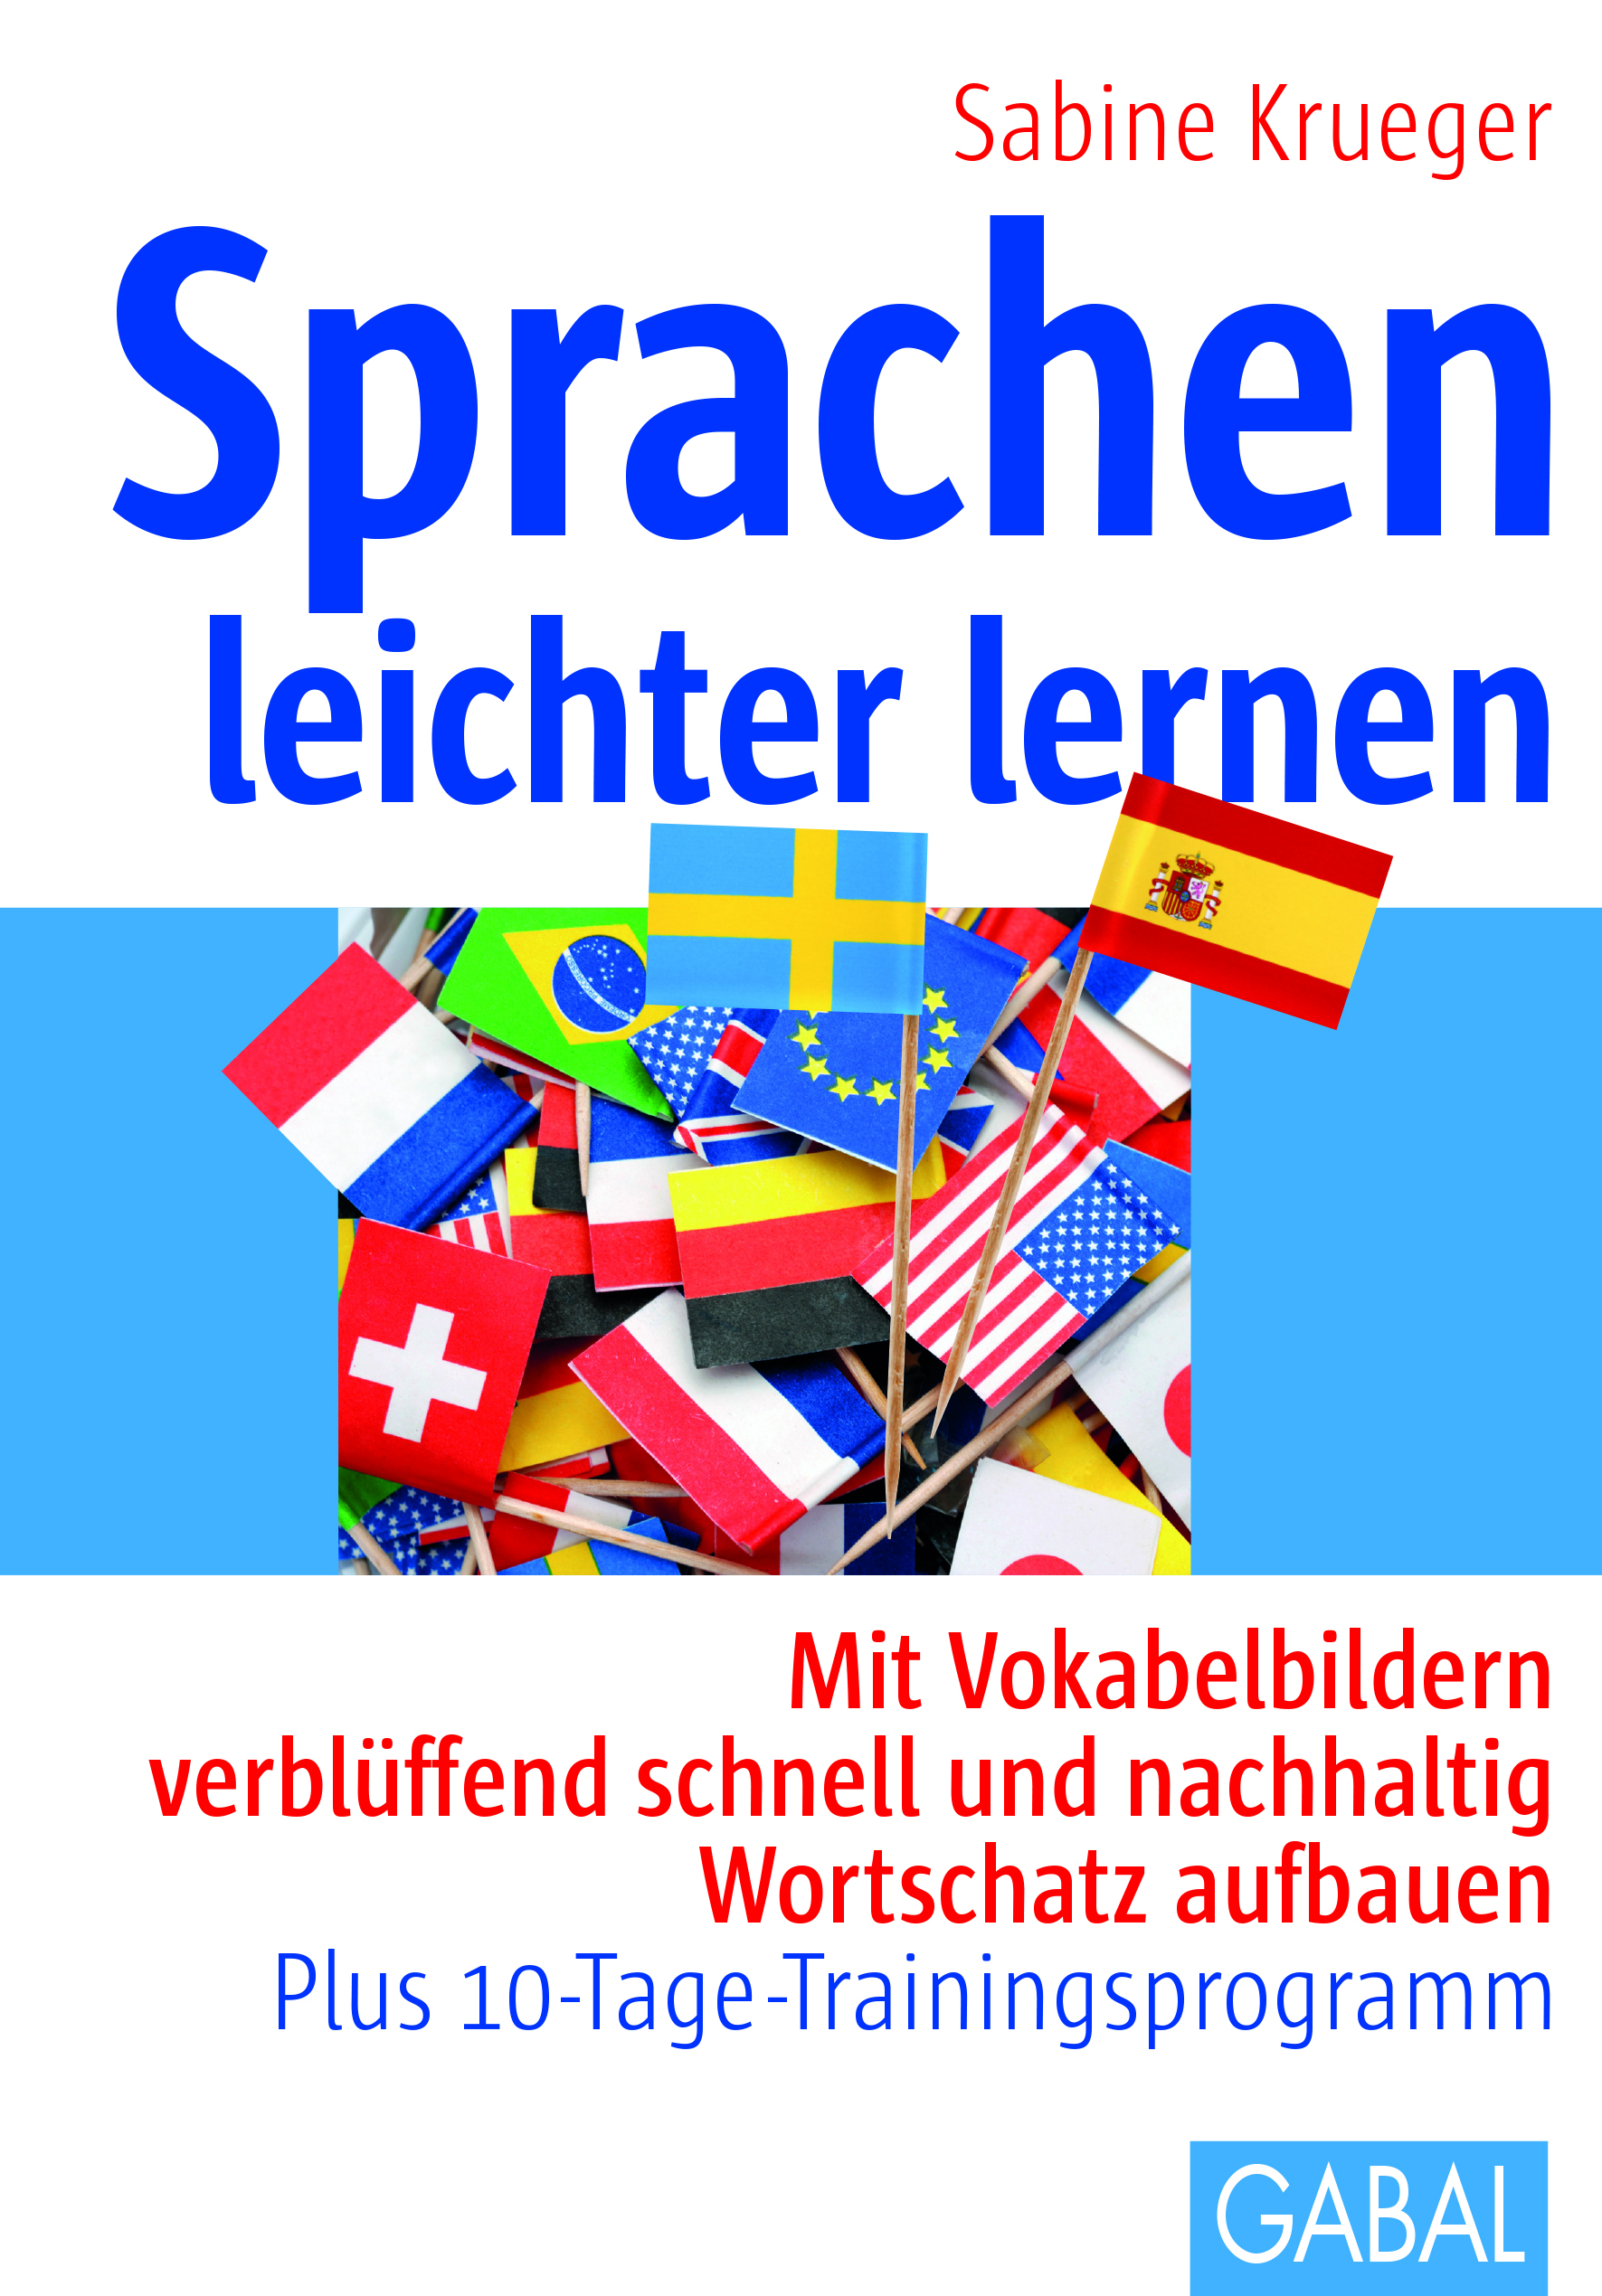 Sprachen leichter lernen - Sabine Krueger, Buch - GABAL Verlag